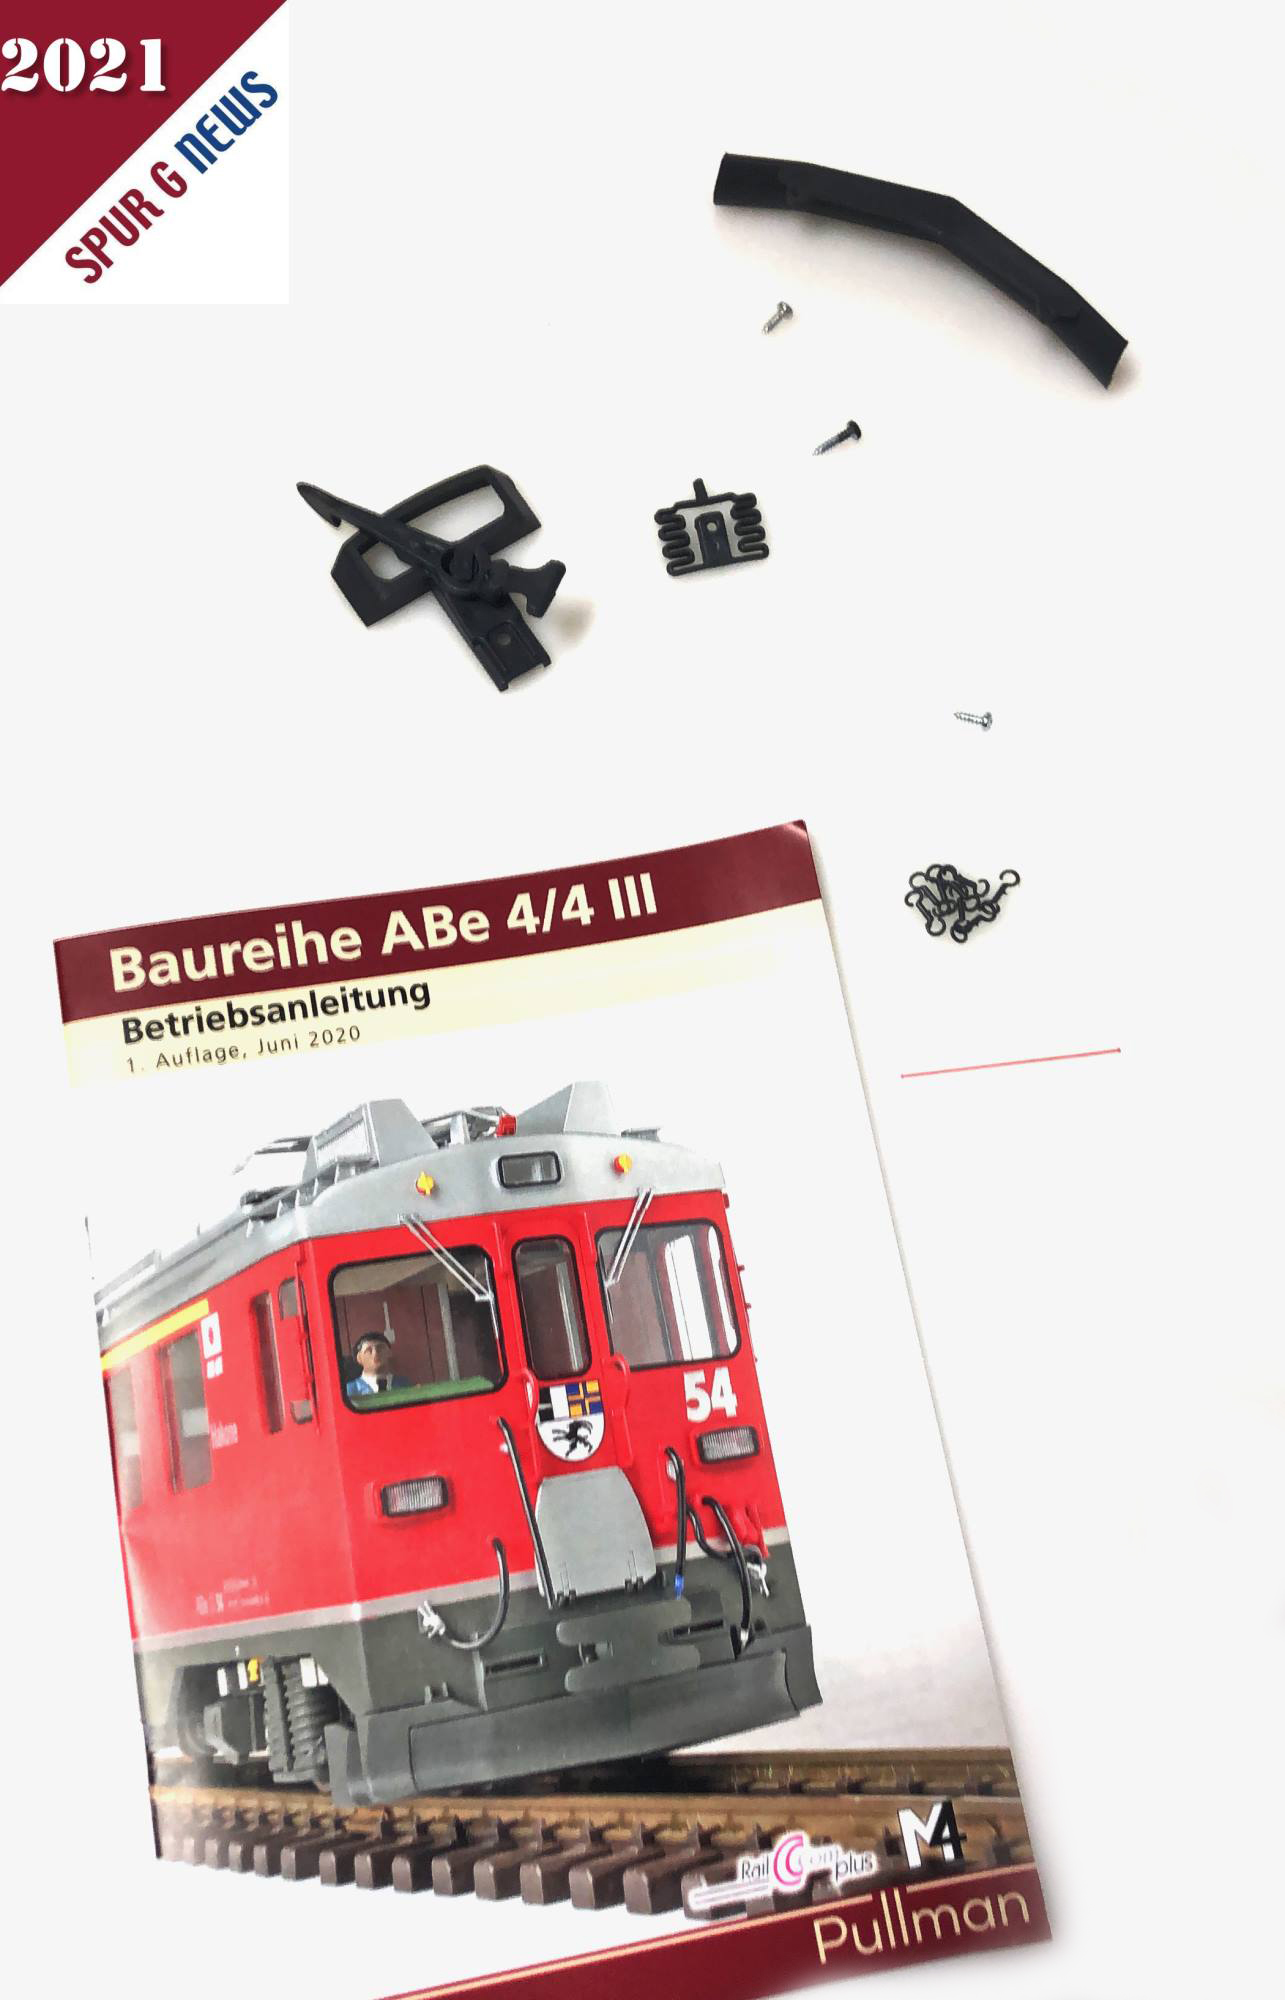 Beilage zum Triebwagen ABe 4/4 III: Bedienungsanleitung mit Zubehörteilen wie Kupplung mit Schrauben, Schienenräumer und kleinen Haken. 